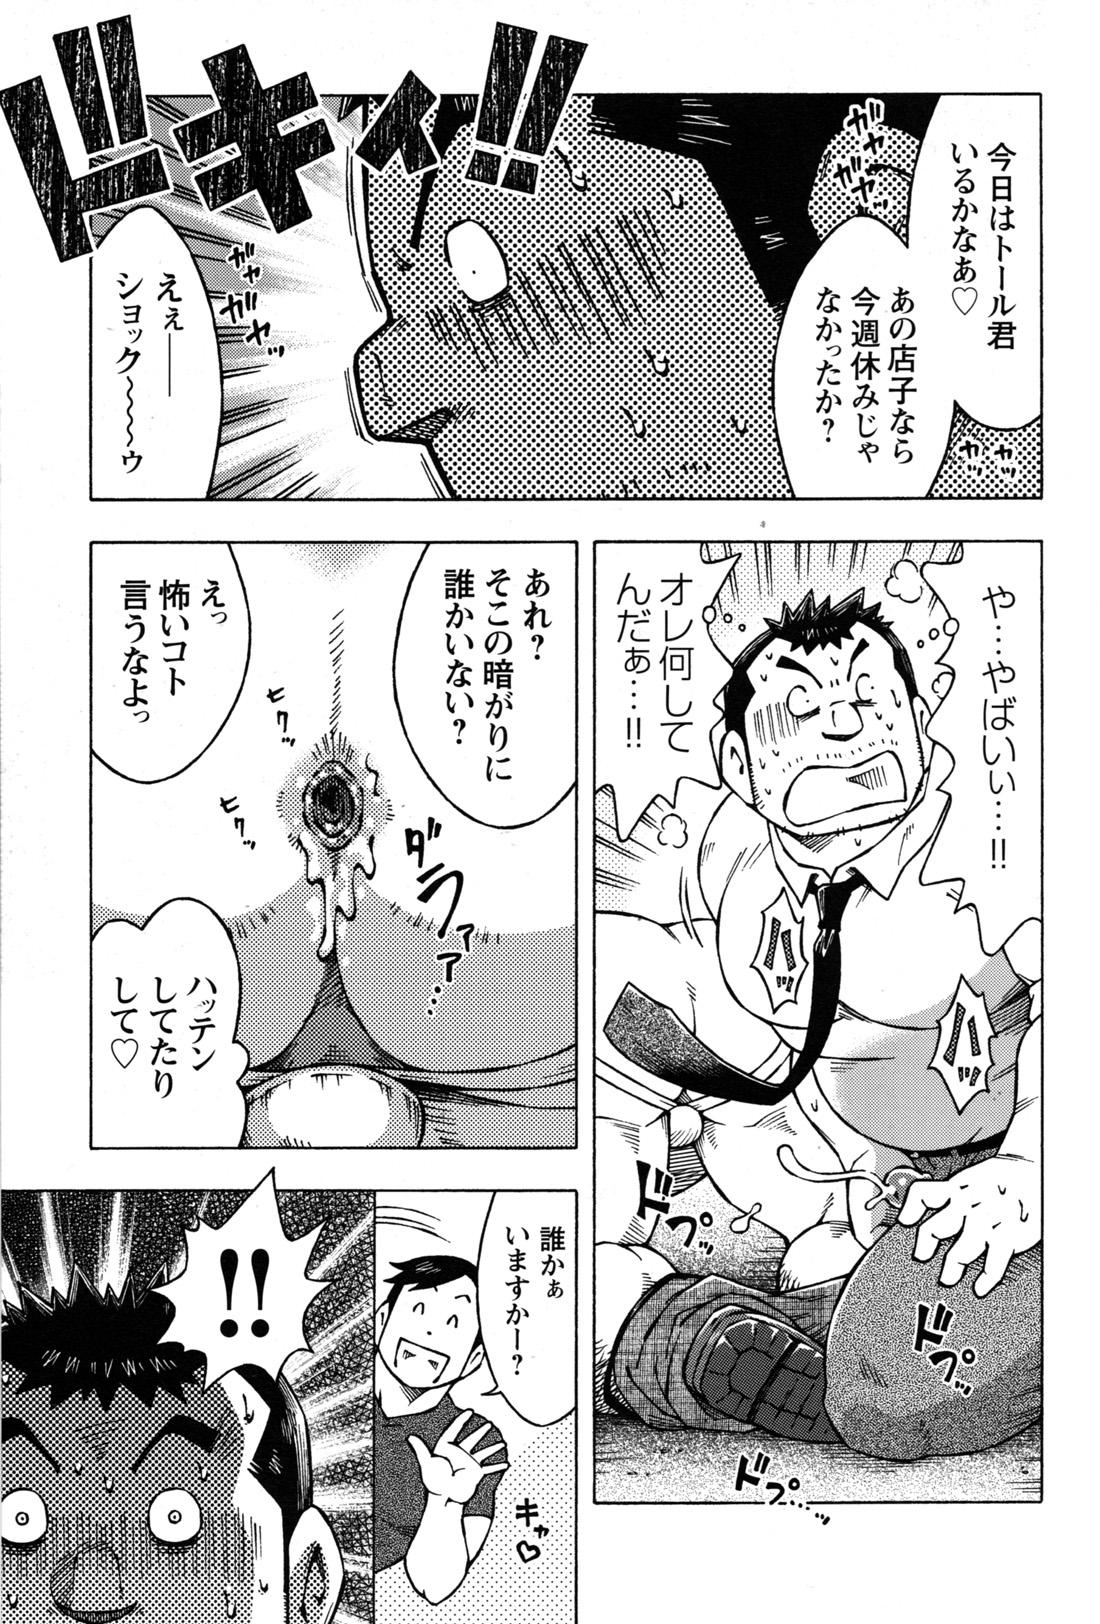 Comic G-men Gaho No.09 Gacchibi Zeme 127